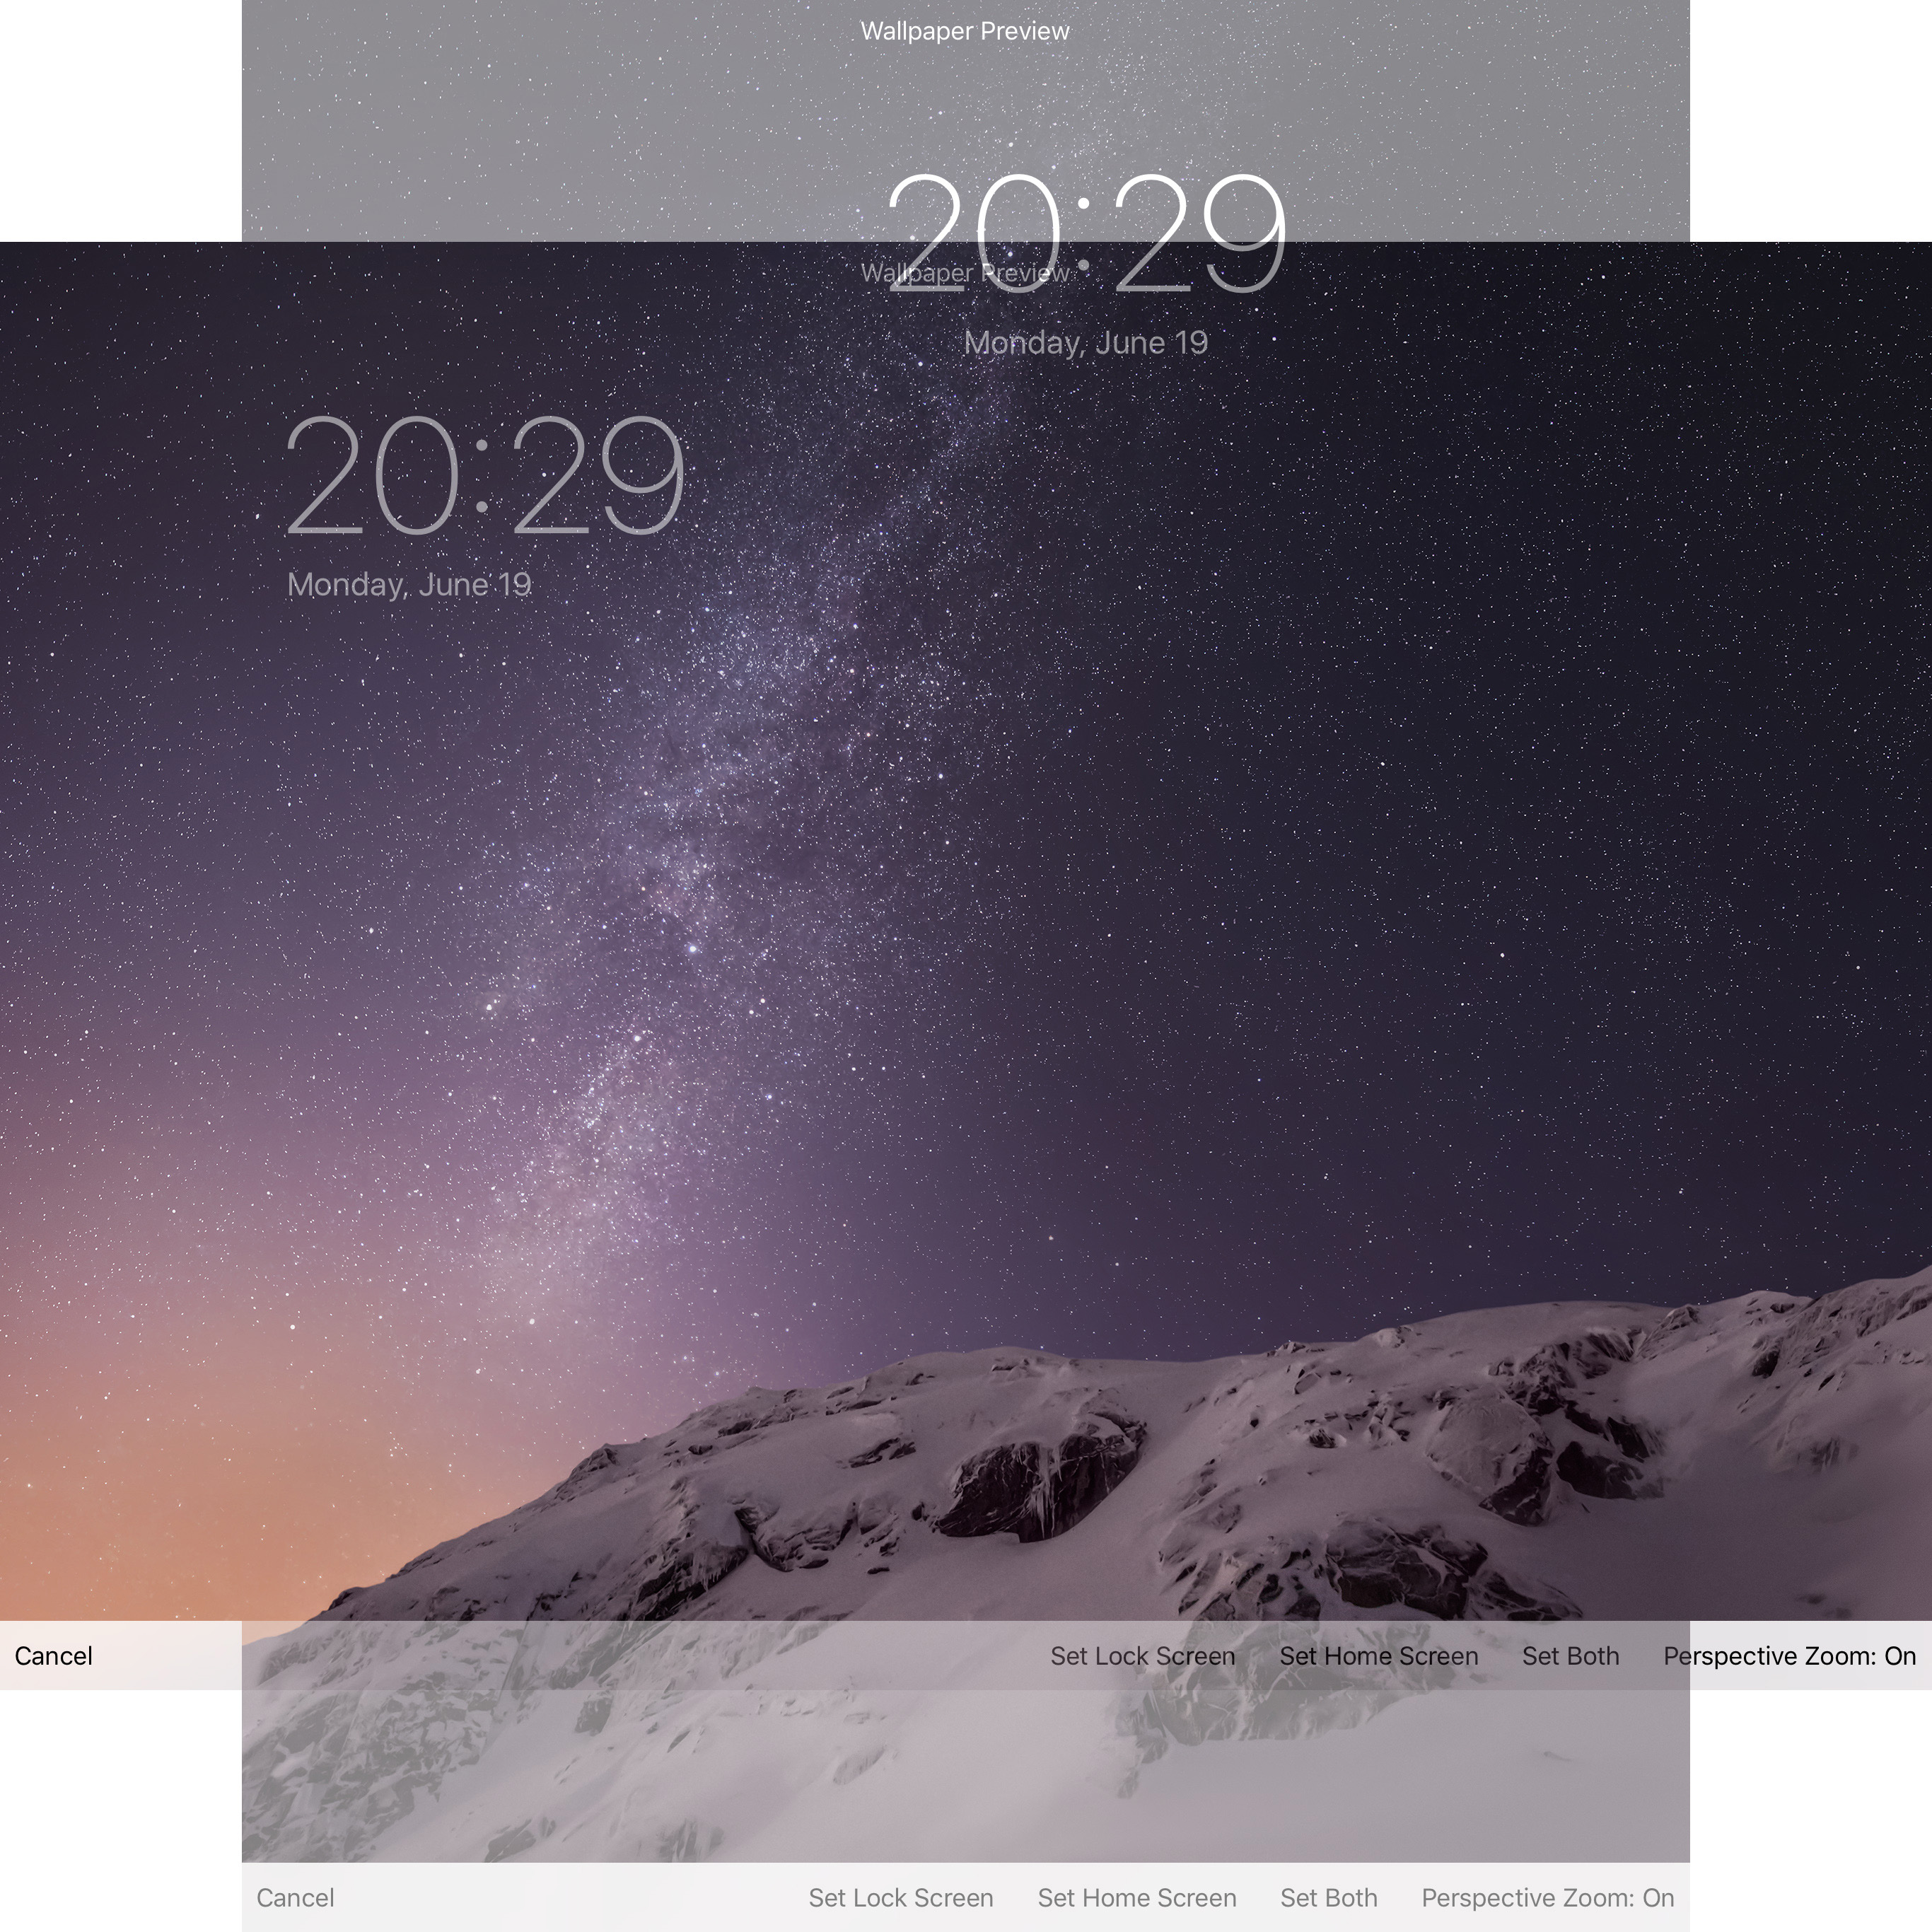 Zoom wallpaper when change orientation la… - Apple Community